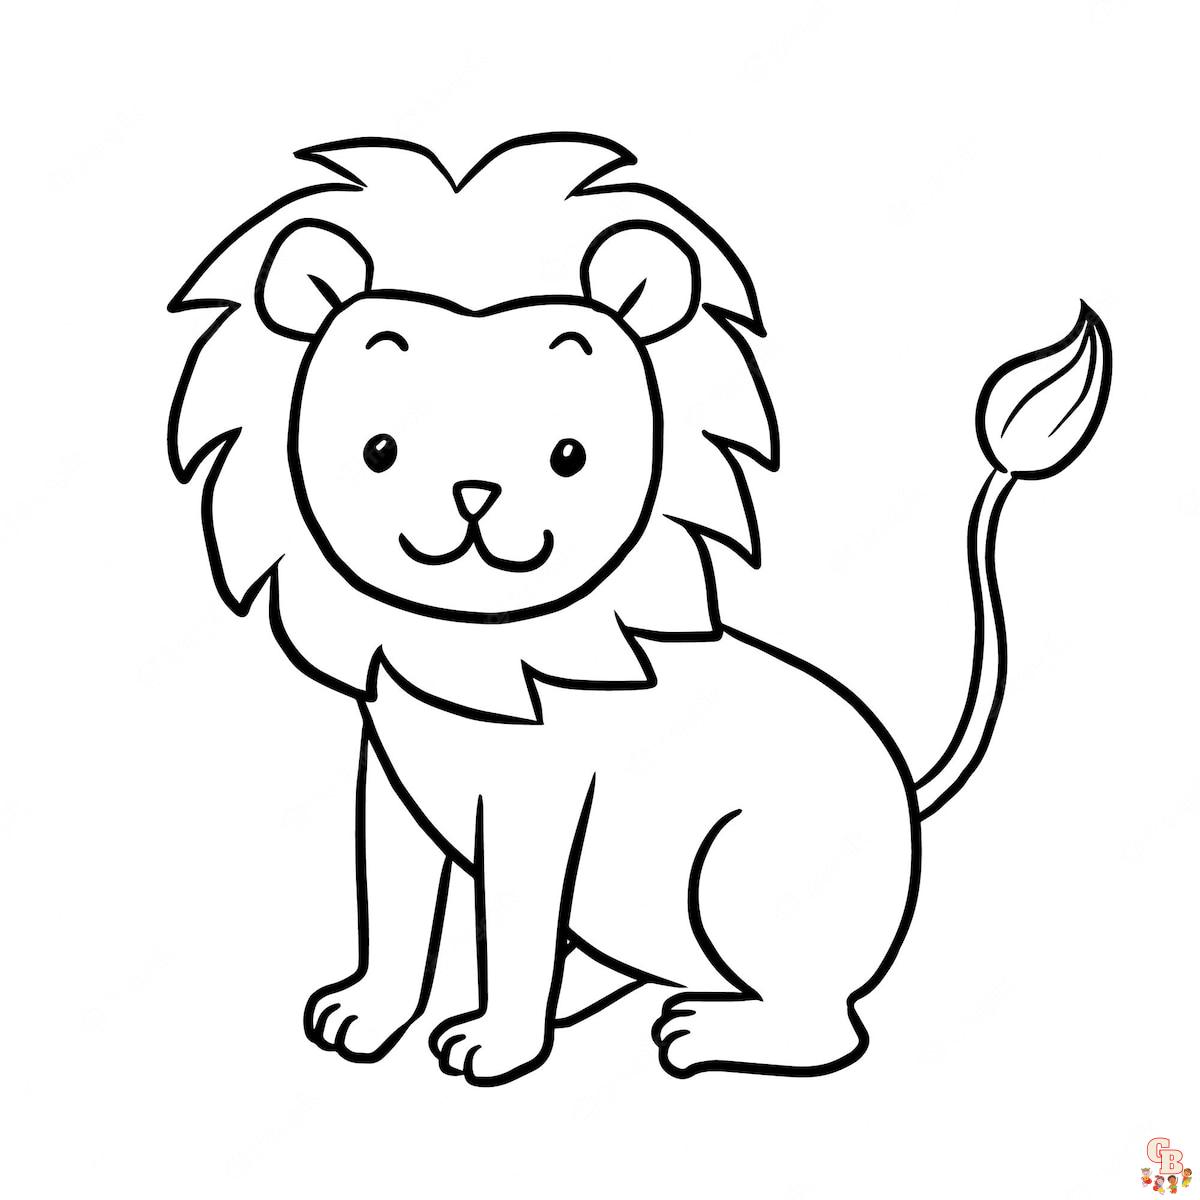 Coloriage Lion Modèles pour Enfants, Adultes et Activités